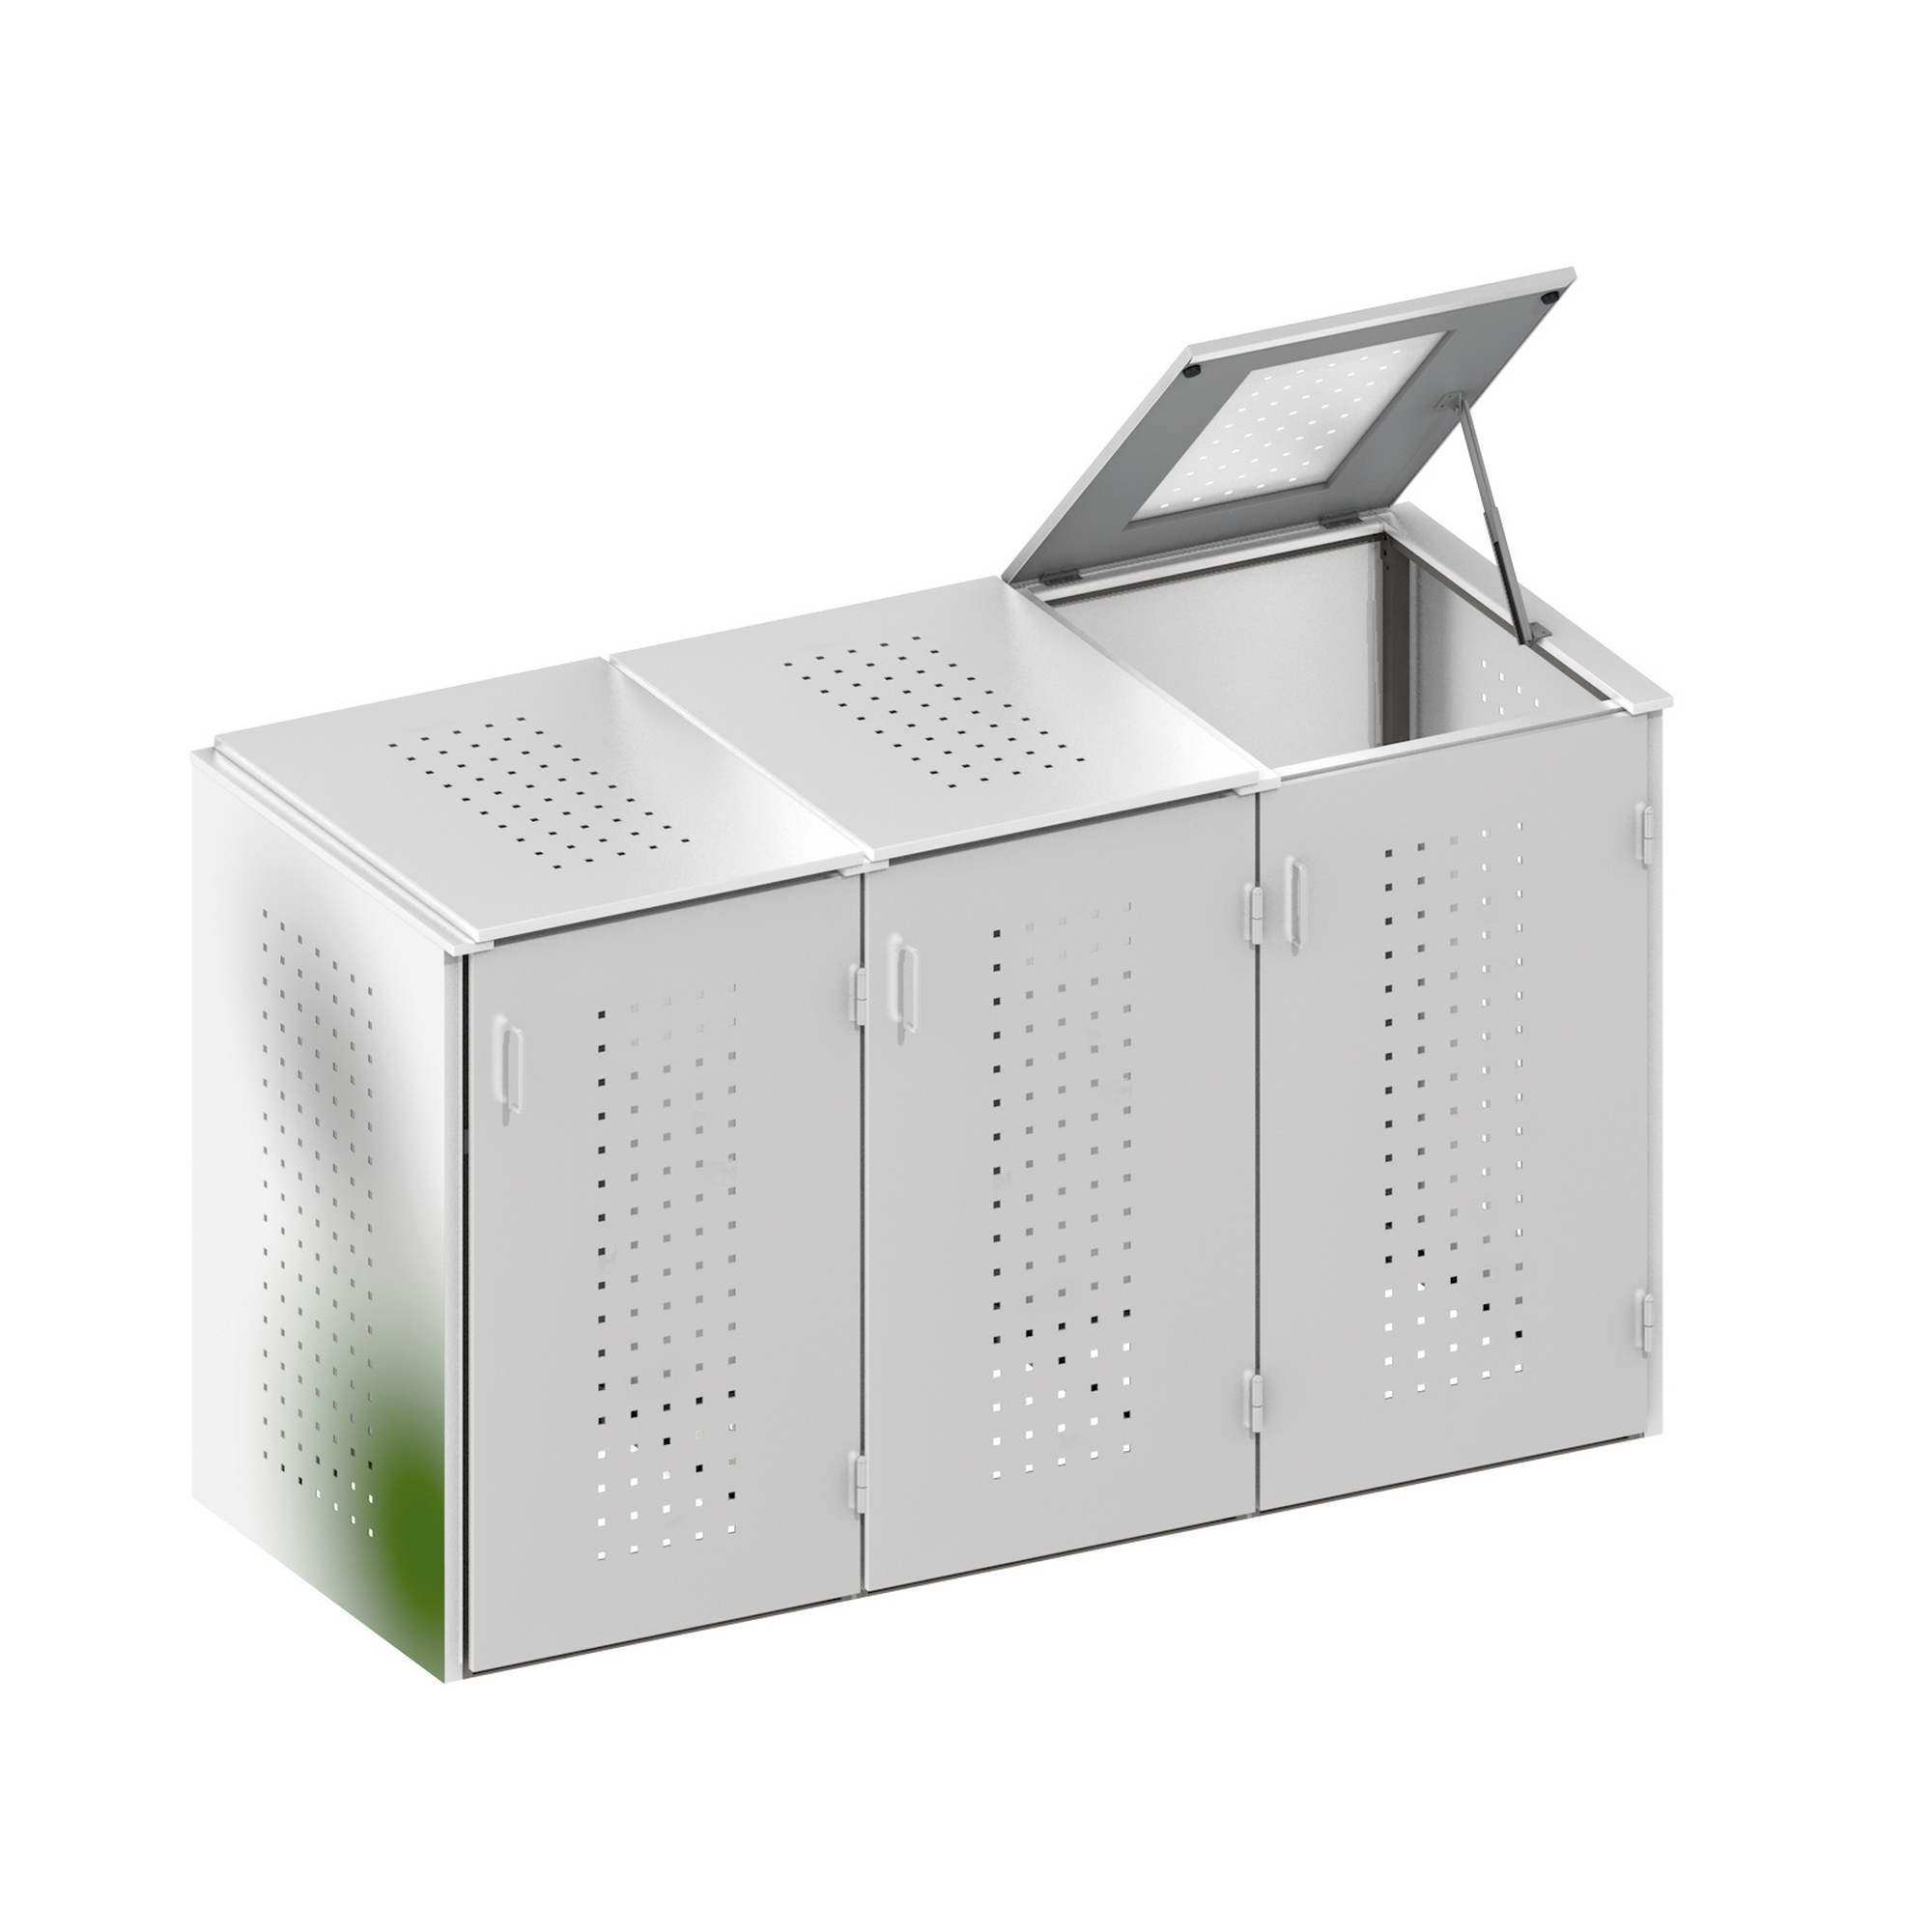 Mülltonnenbox 'Binto' mit Klappdeckel silbern 206 x 125 x 84 cm + product picture